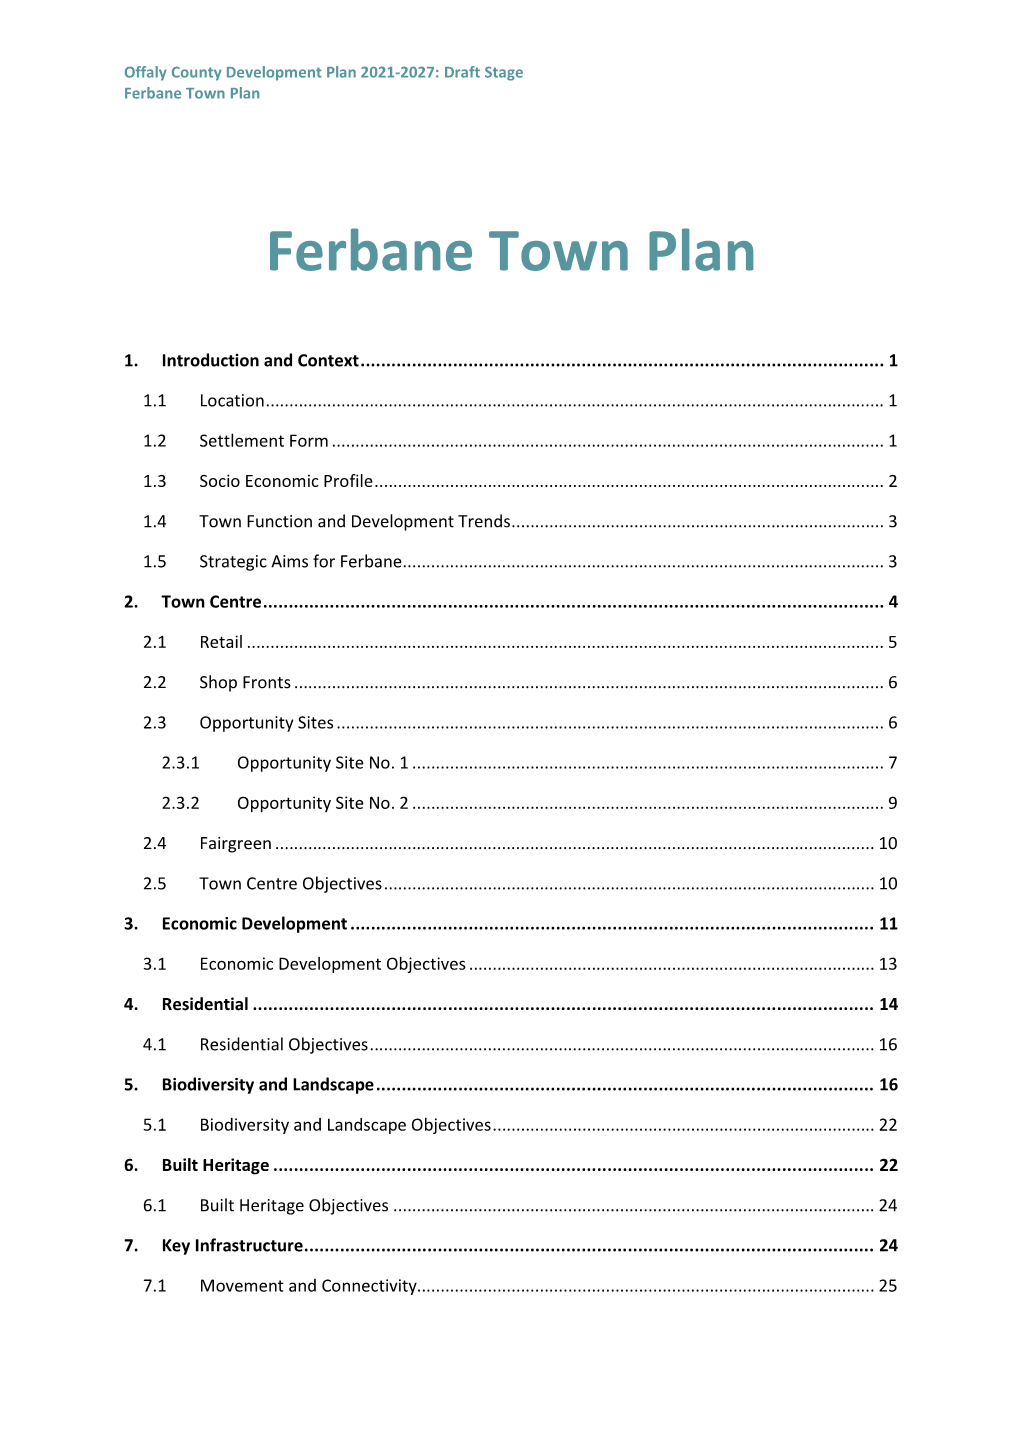 Ferbane Town Plan